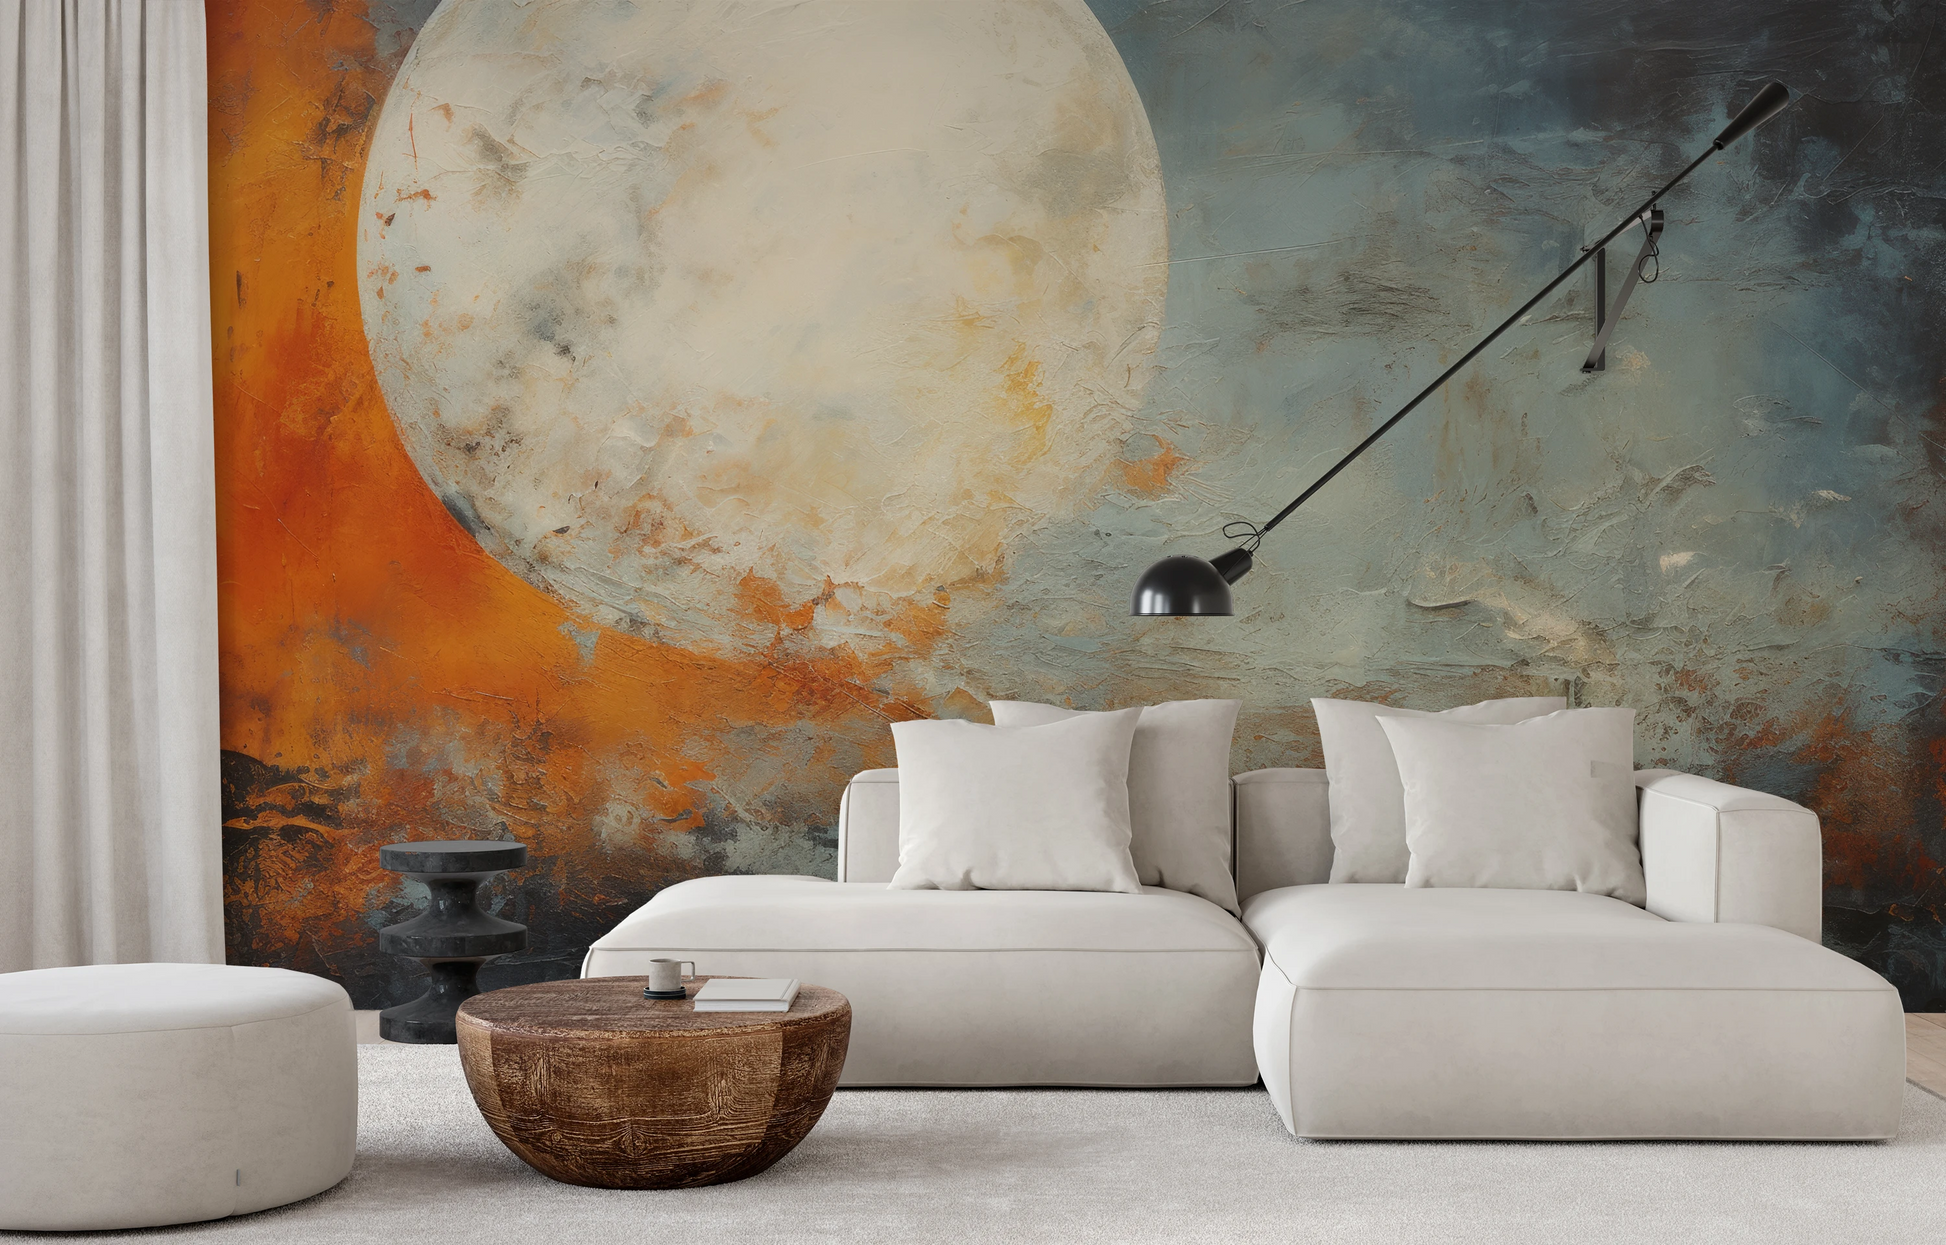 Fototapeta malowana o nazwie Moon's Texture pokazana w aranżacji wnętrza.